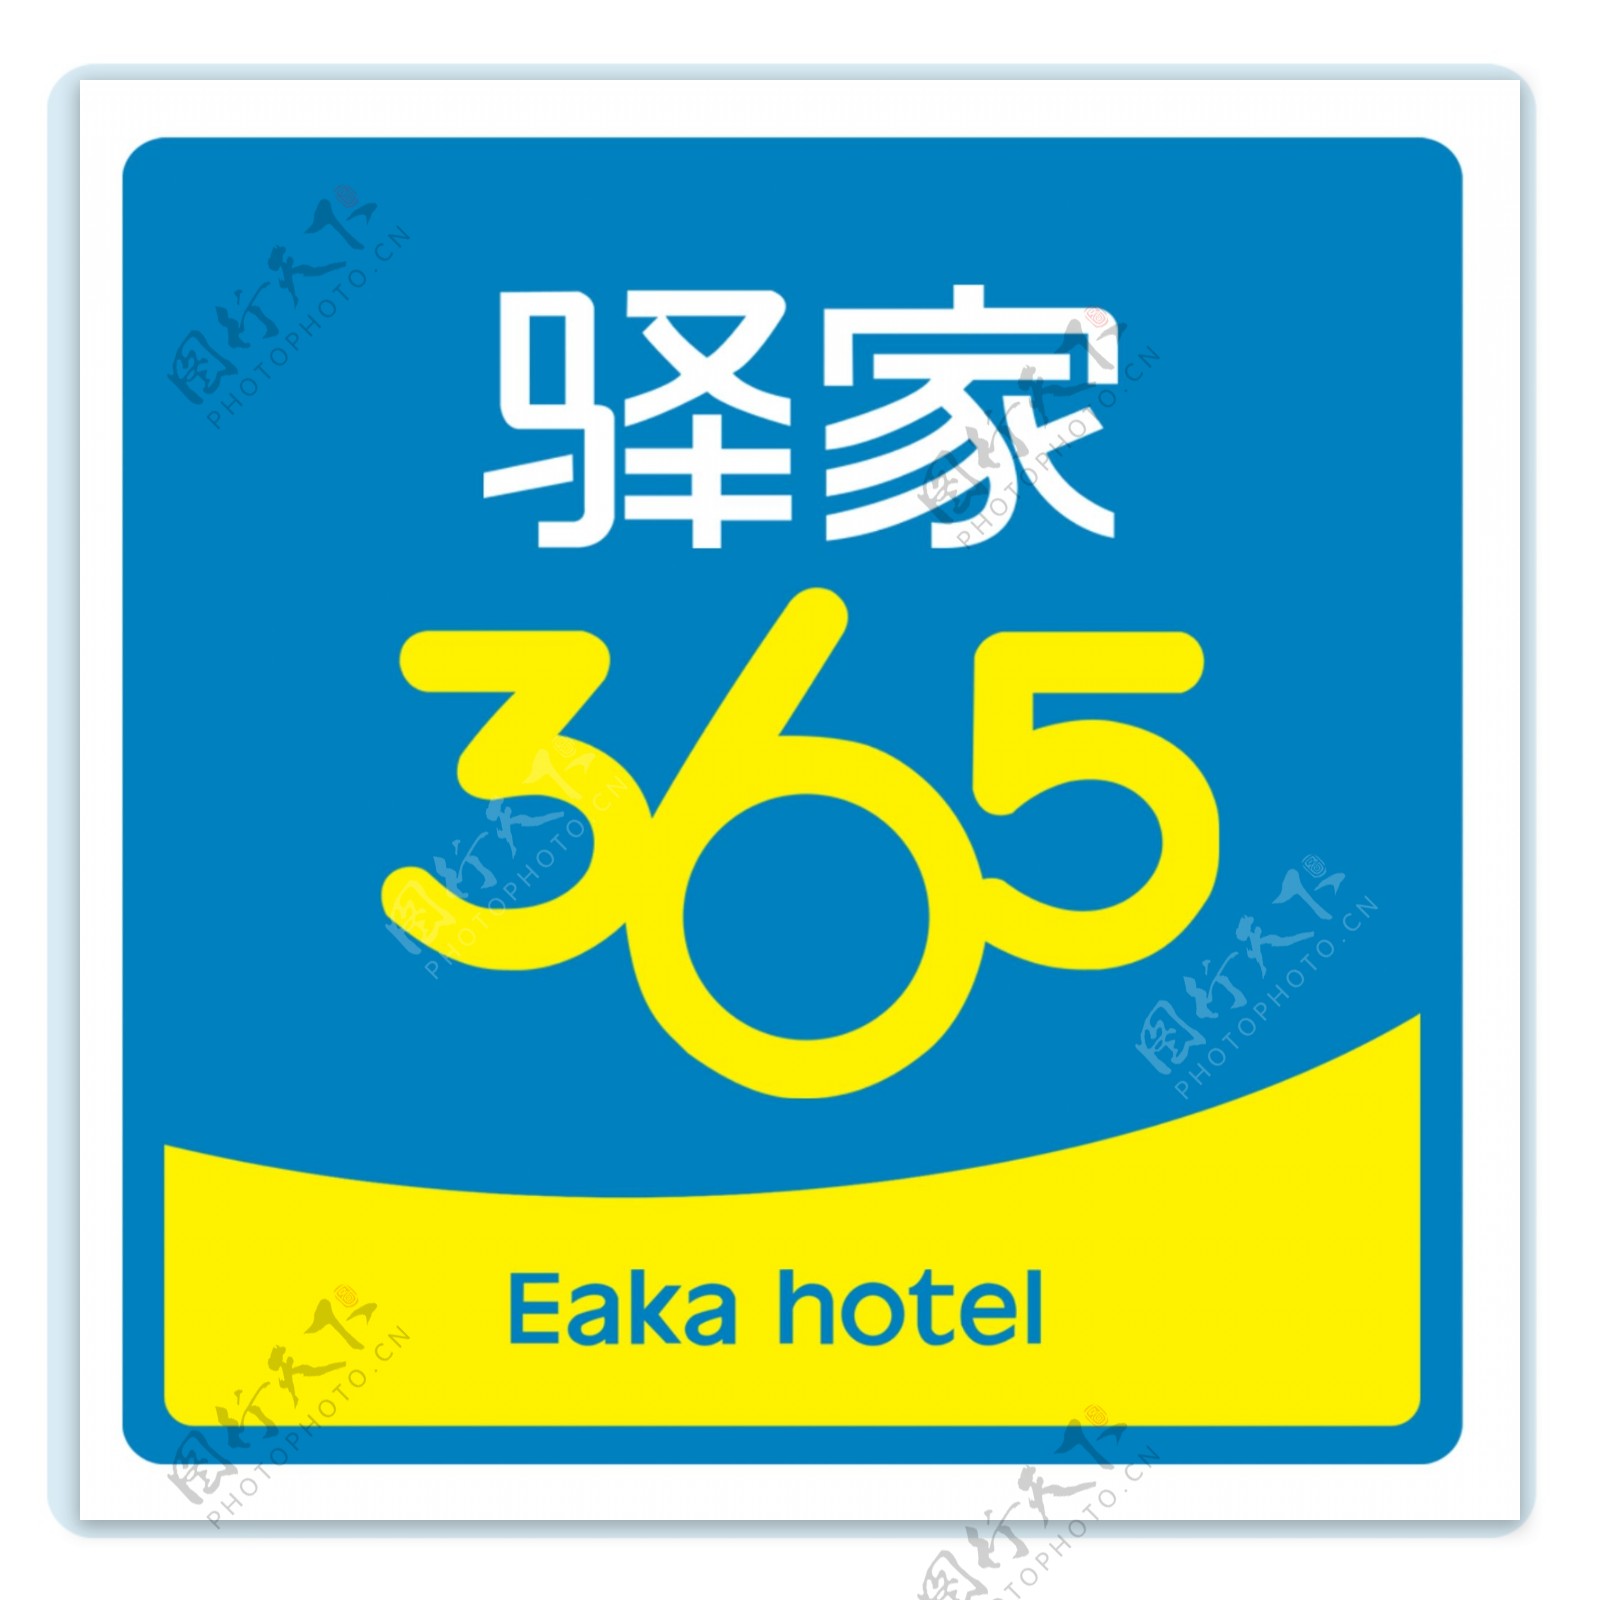 驿家365酒店标志设计